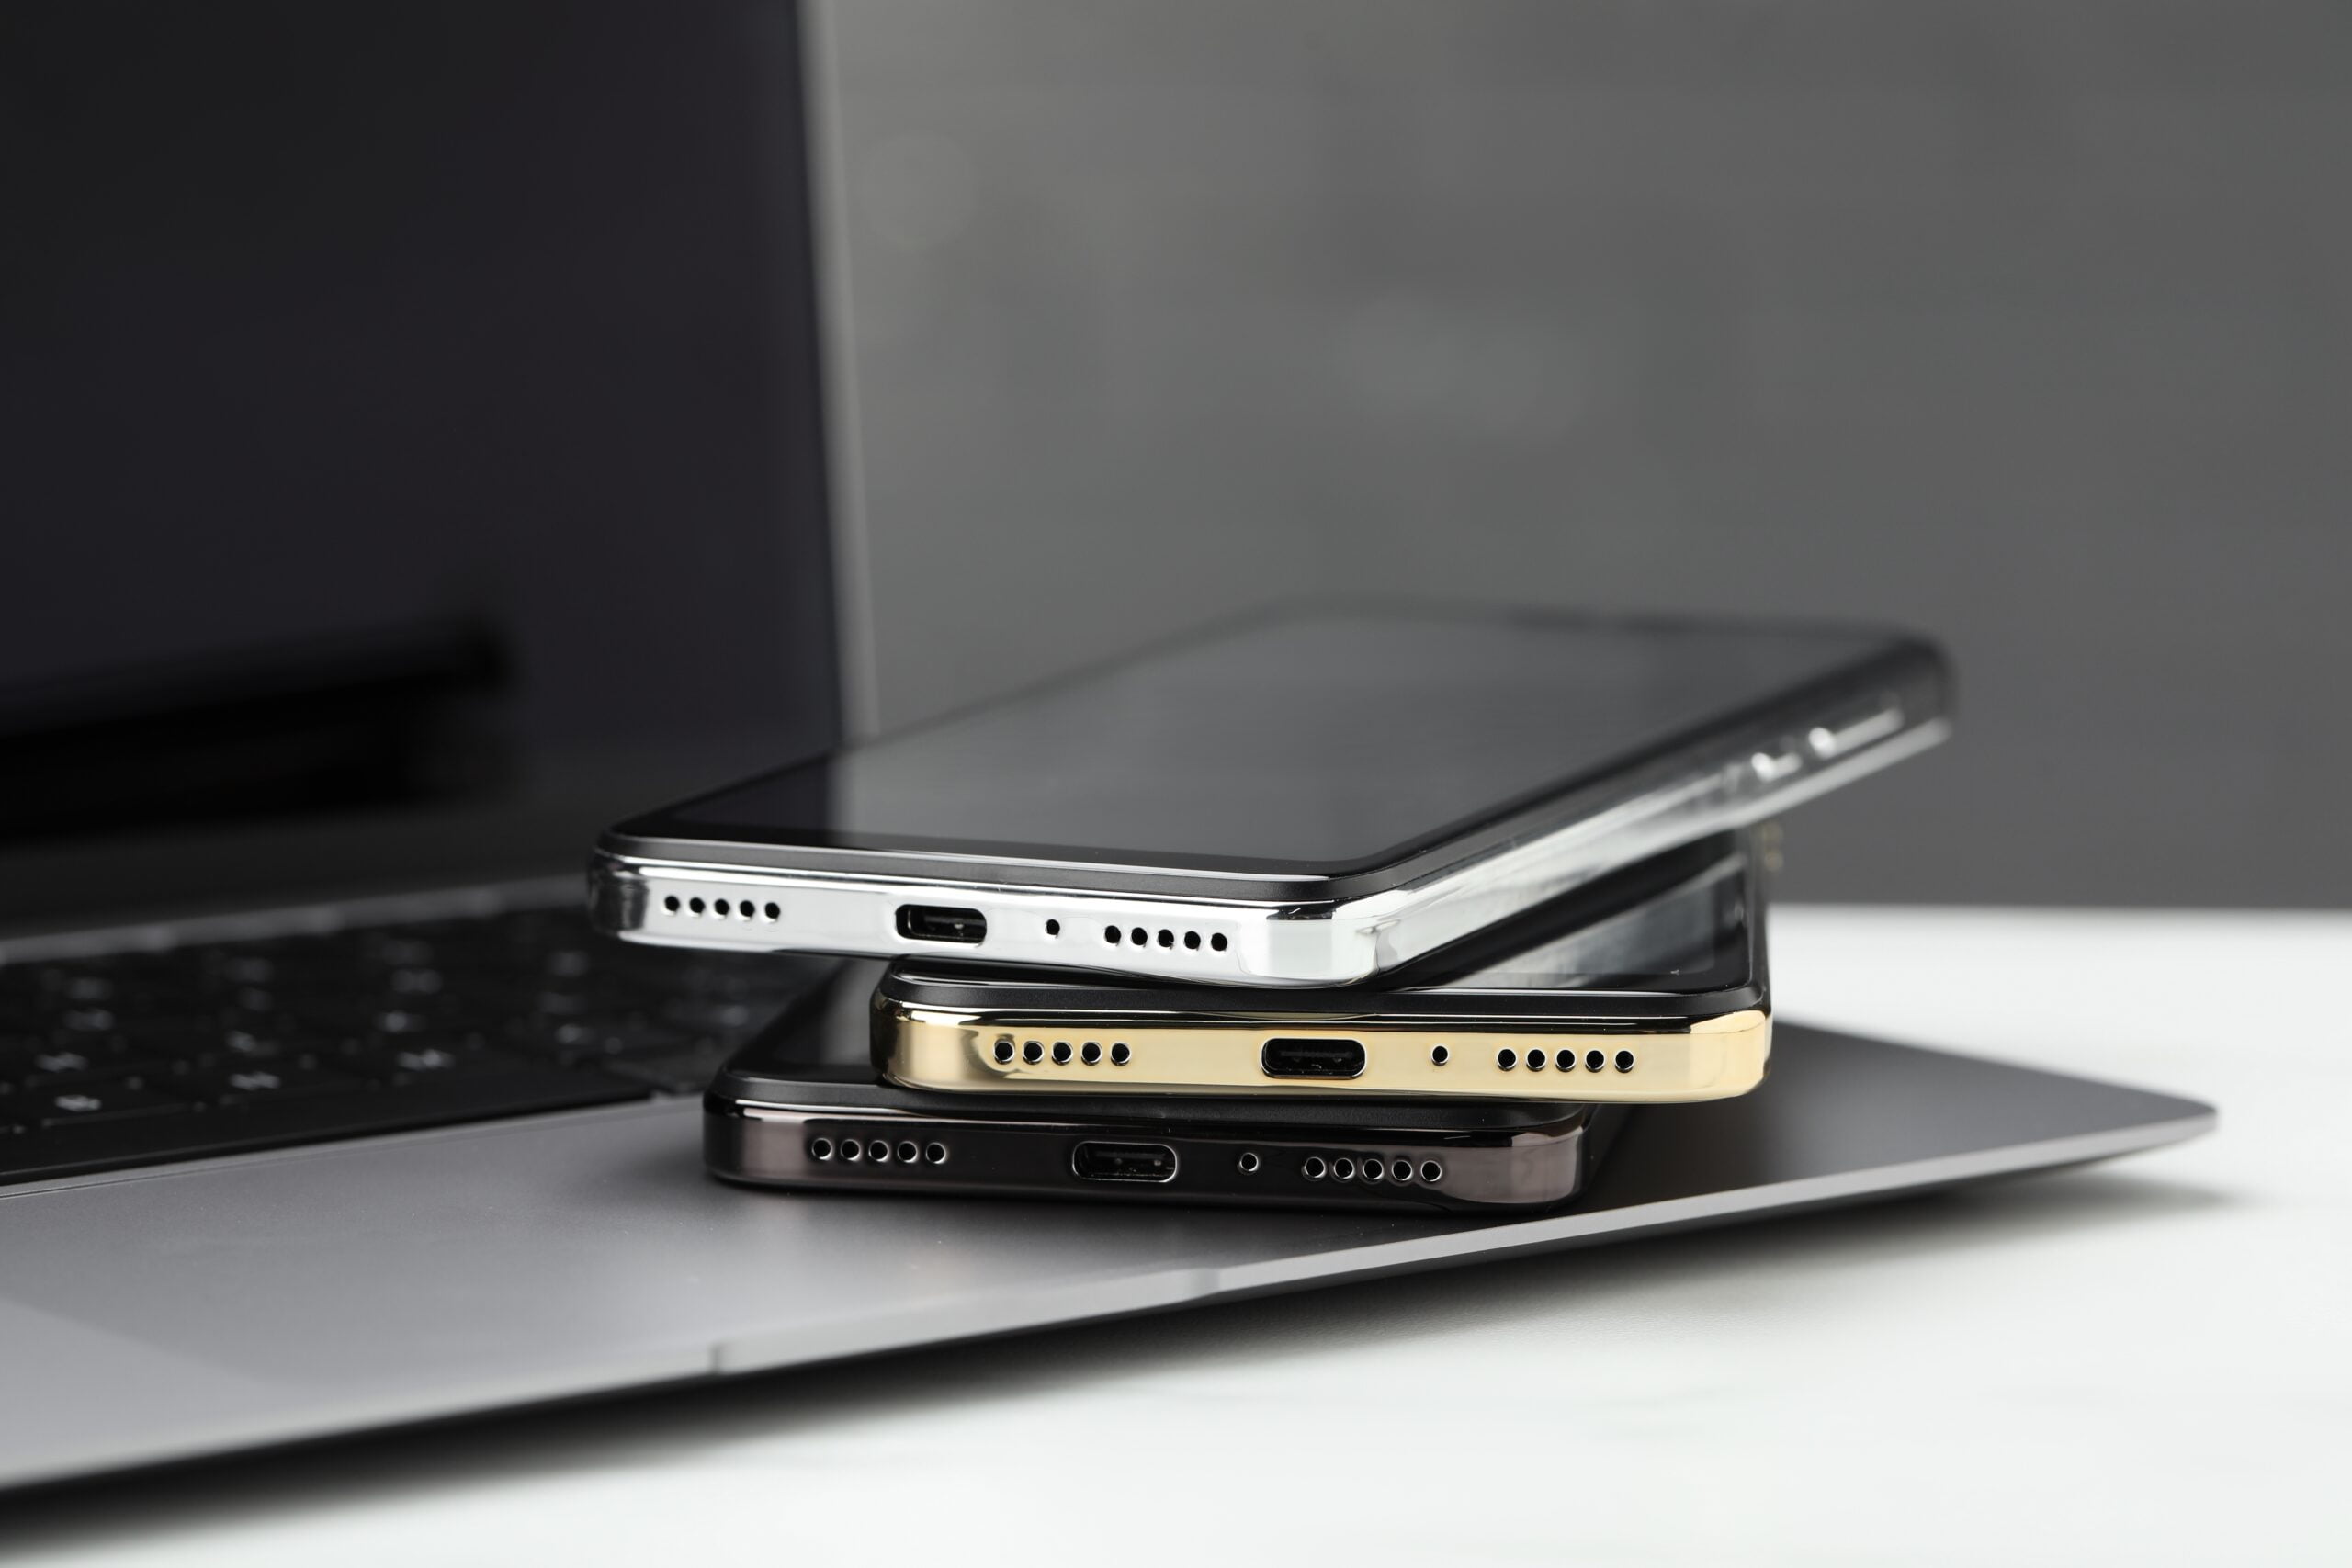 Trzy smartfony ułożone jeden na drugim, leżące na laptopie.